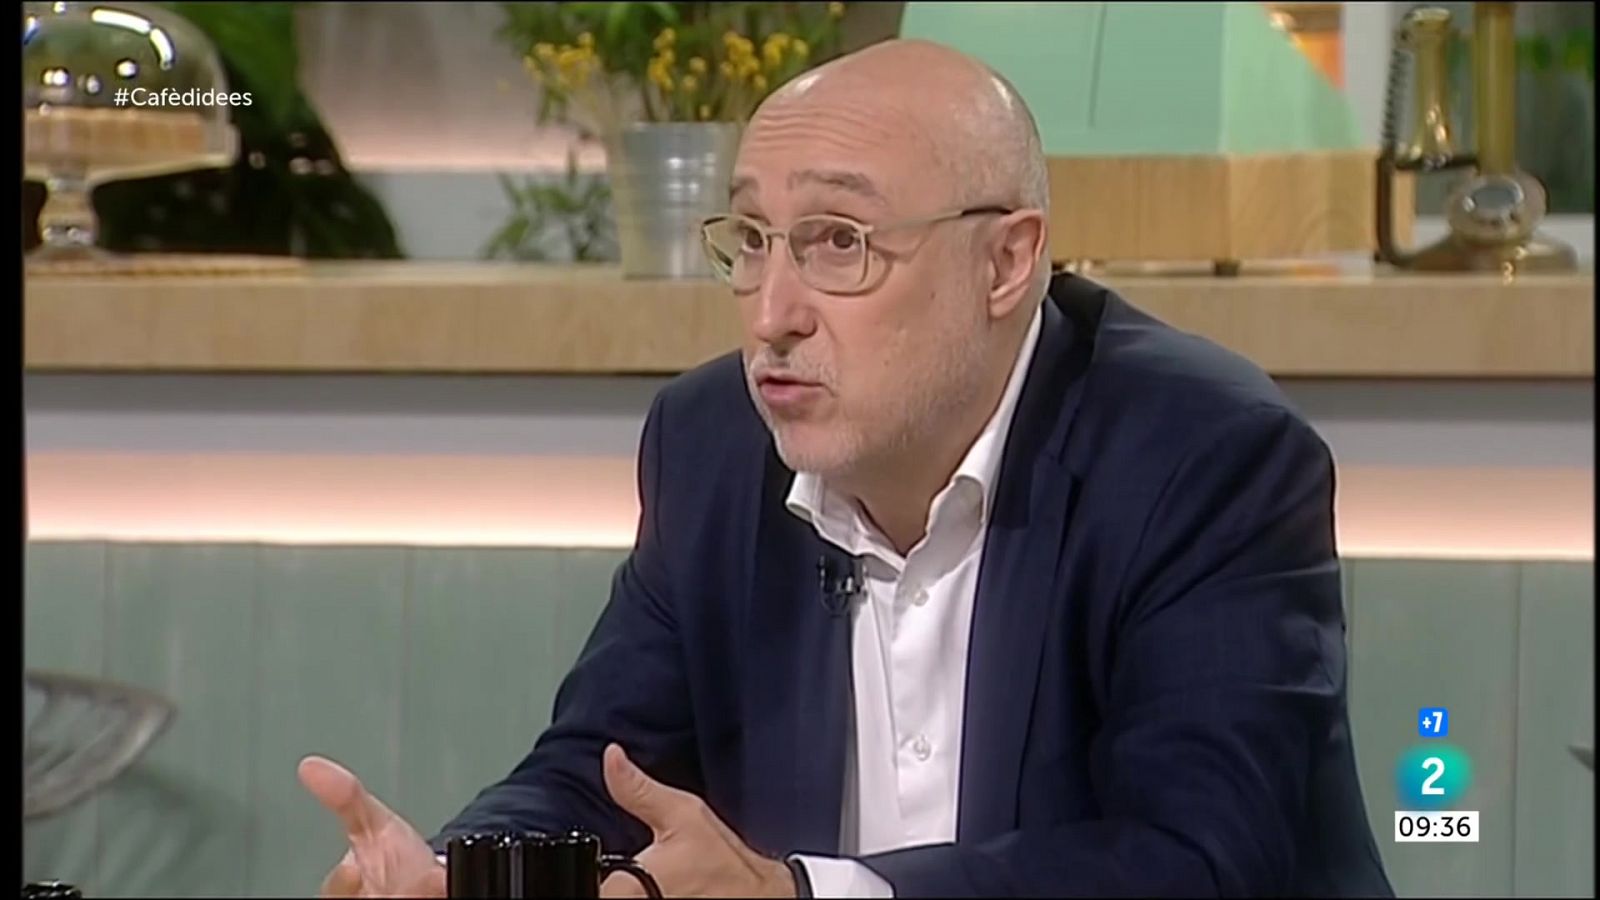 Cafè d'idees | Josep M. Espinet: "El sistema és molt garantista davant les ocupacions" - RTVE Catalunya